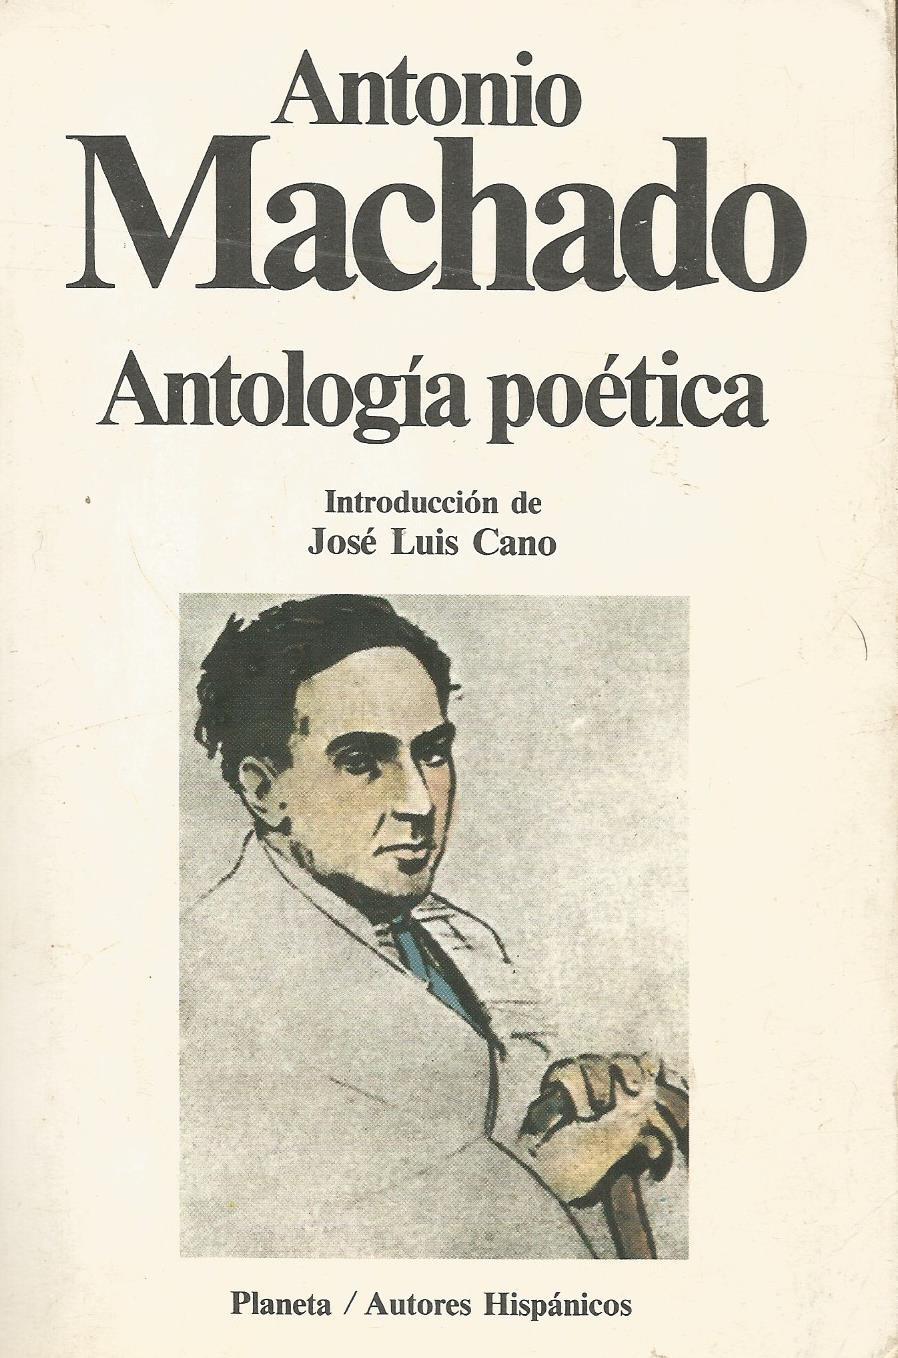 Antología poética - Antonio Machado